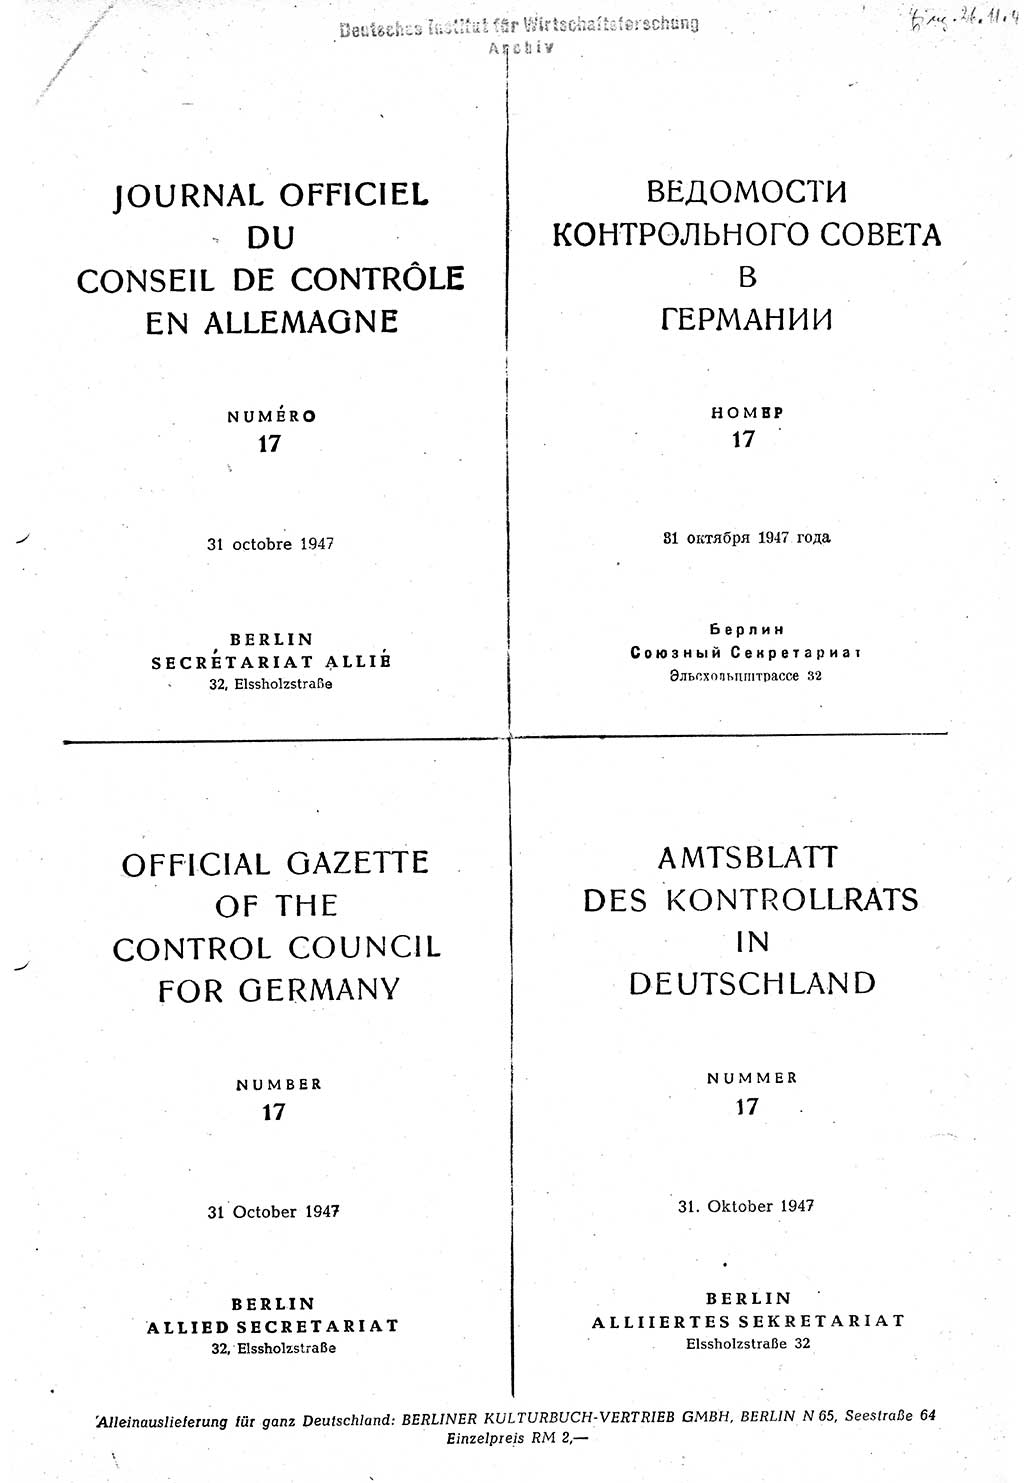 Amtsblatt des Kontrollrats (ABlKR) in Deutschland 1947, Seite 288 (ABlKR Dtl. 1947, S. 288)